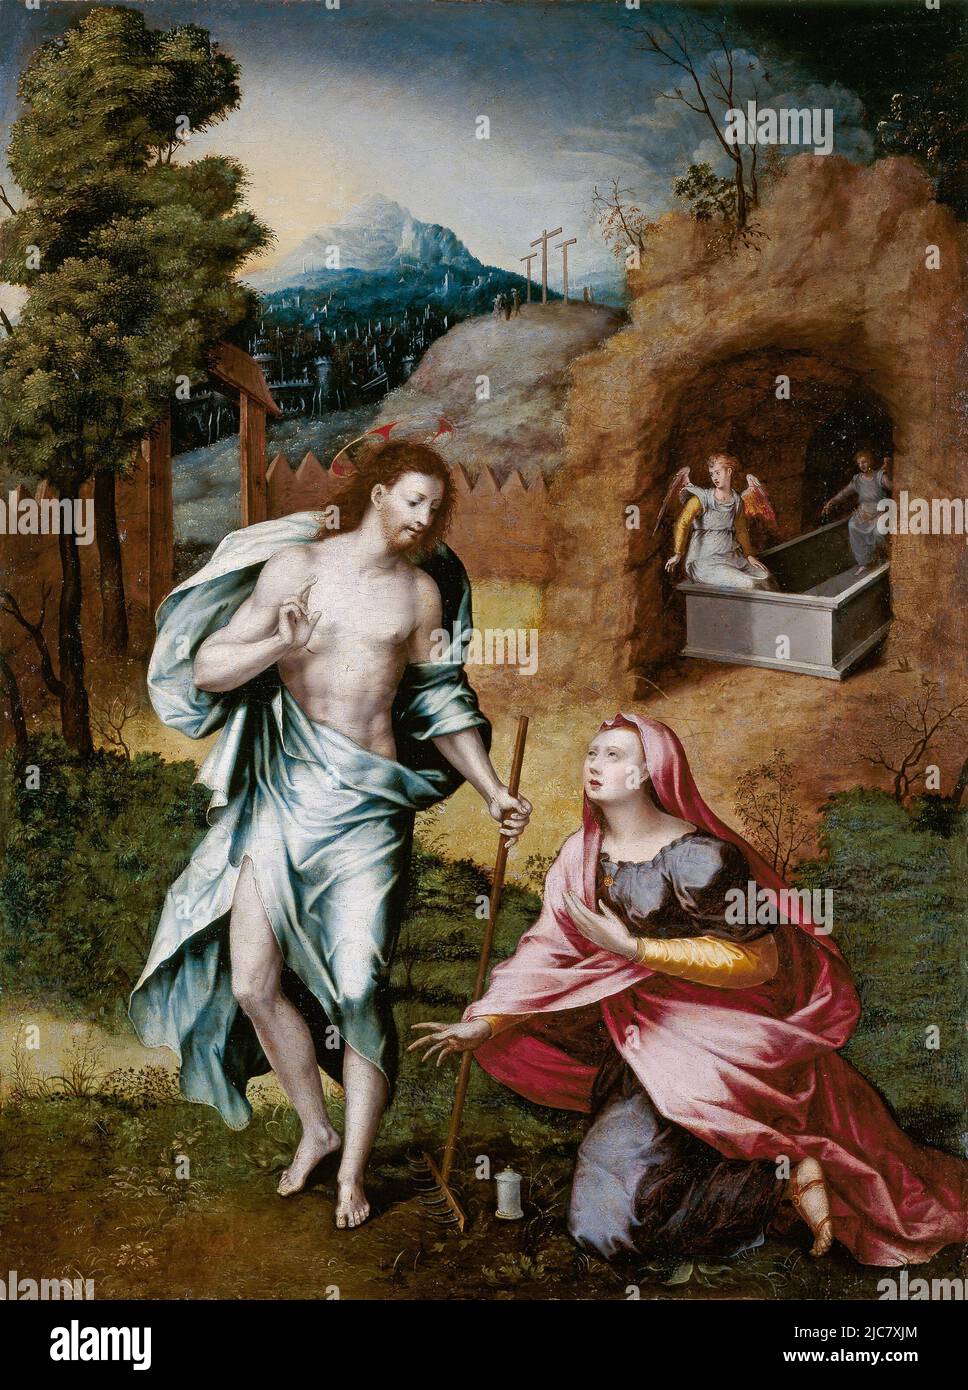 Noli me tangere de Jerónimo Cosida (1510-1592). Cette peinture dépeint le moment où Marie Magdelene reconnaît le Jésus ressuscité. Elle atteint pour lui, mais il lui demande de ne pas le toucher (Noli me tangere) car il n'est pas encore monté au ciel. Banque D'Images